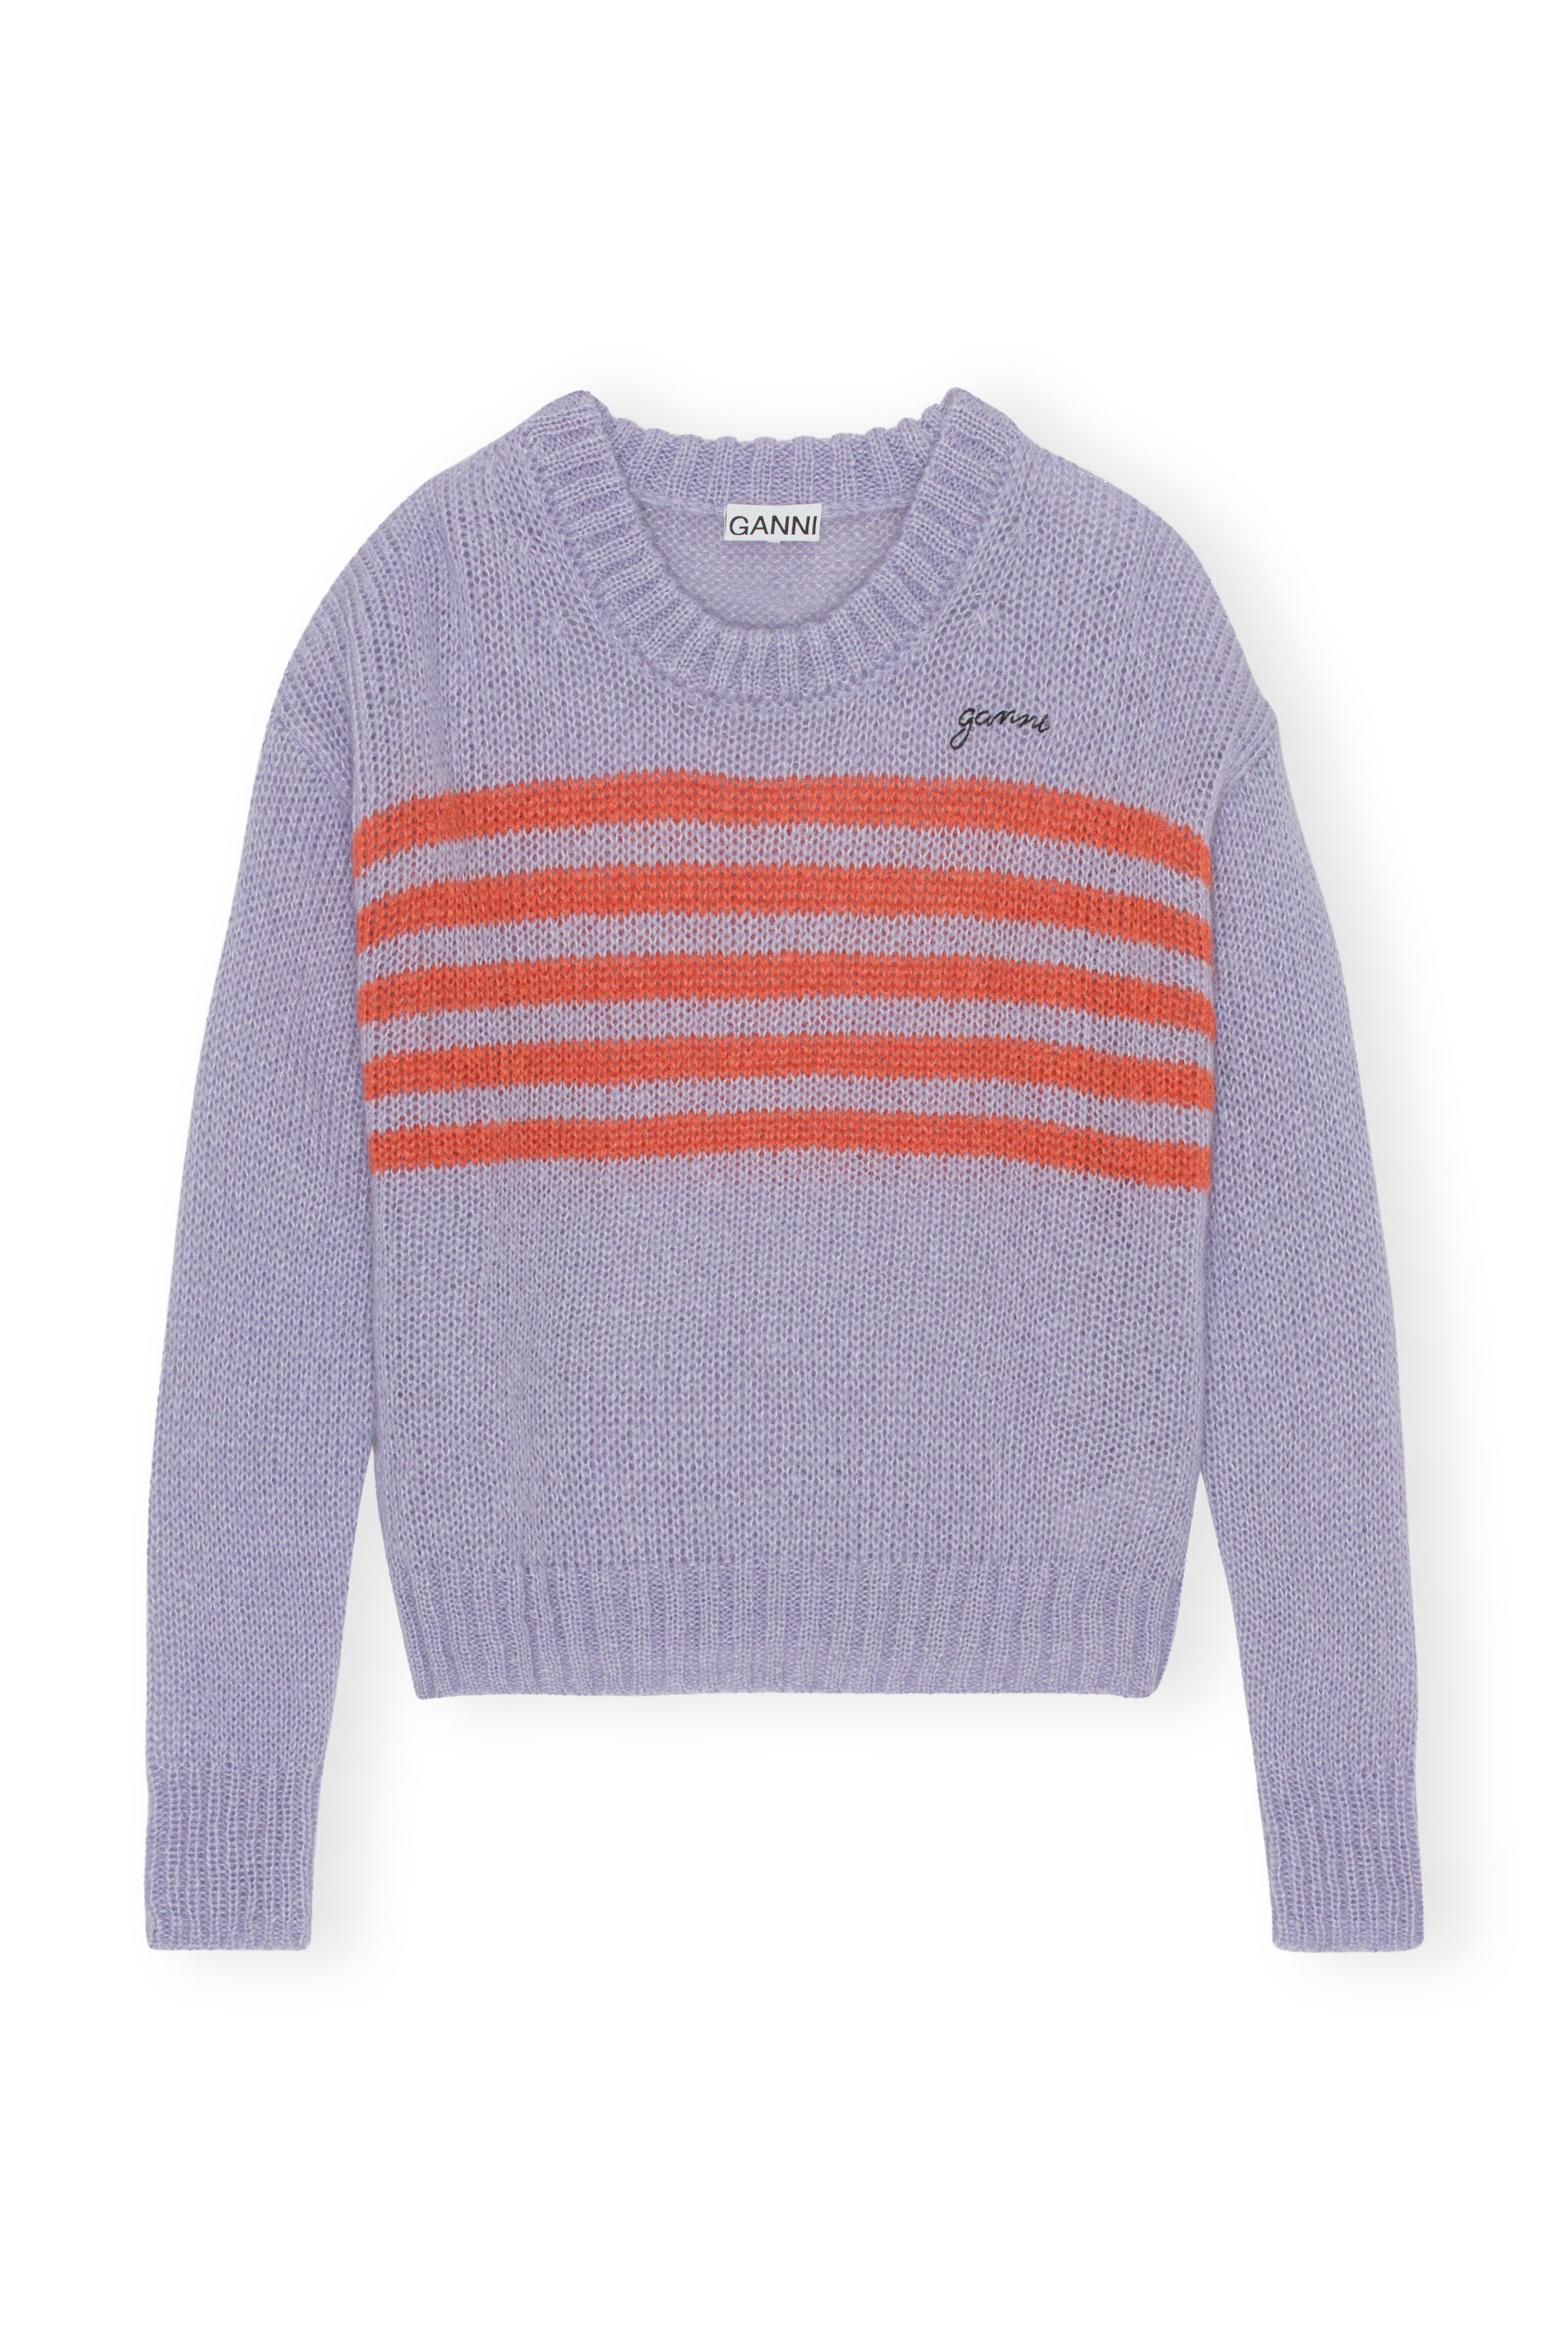 Women's Sweaters | Turtlenecks & Knitted Sweaters | GANNI US